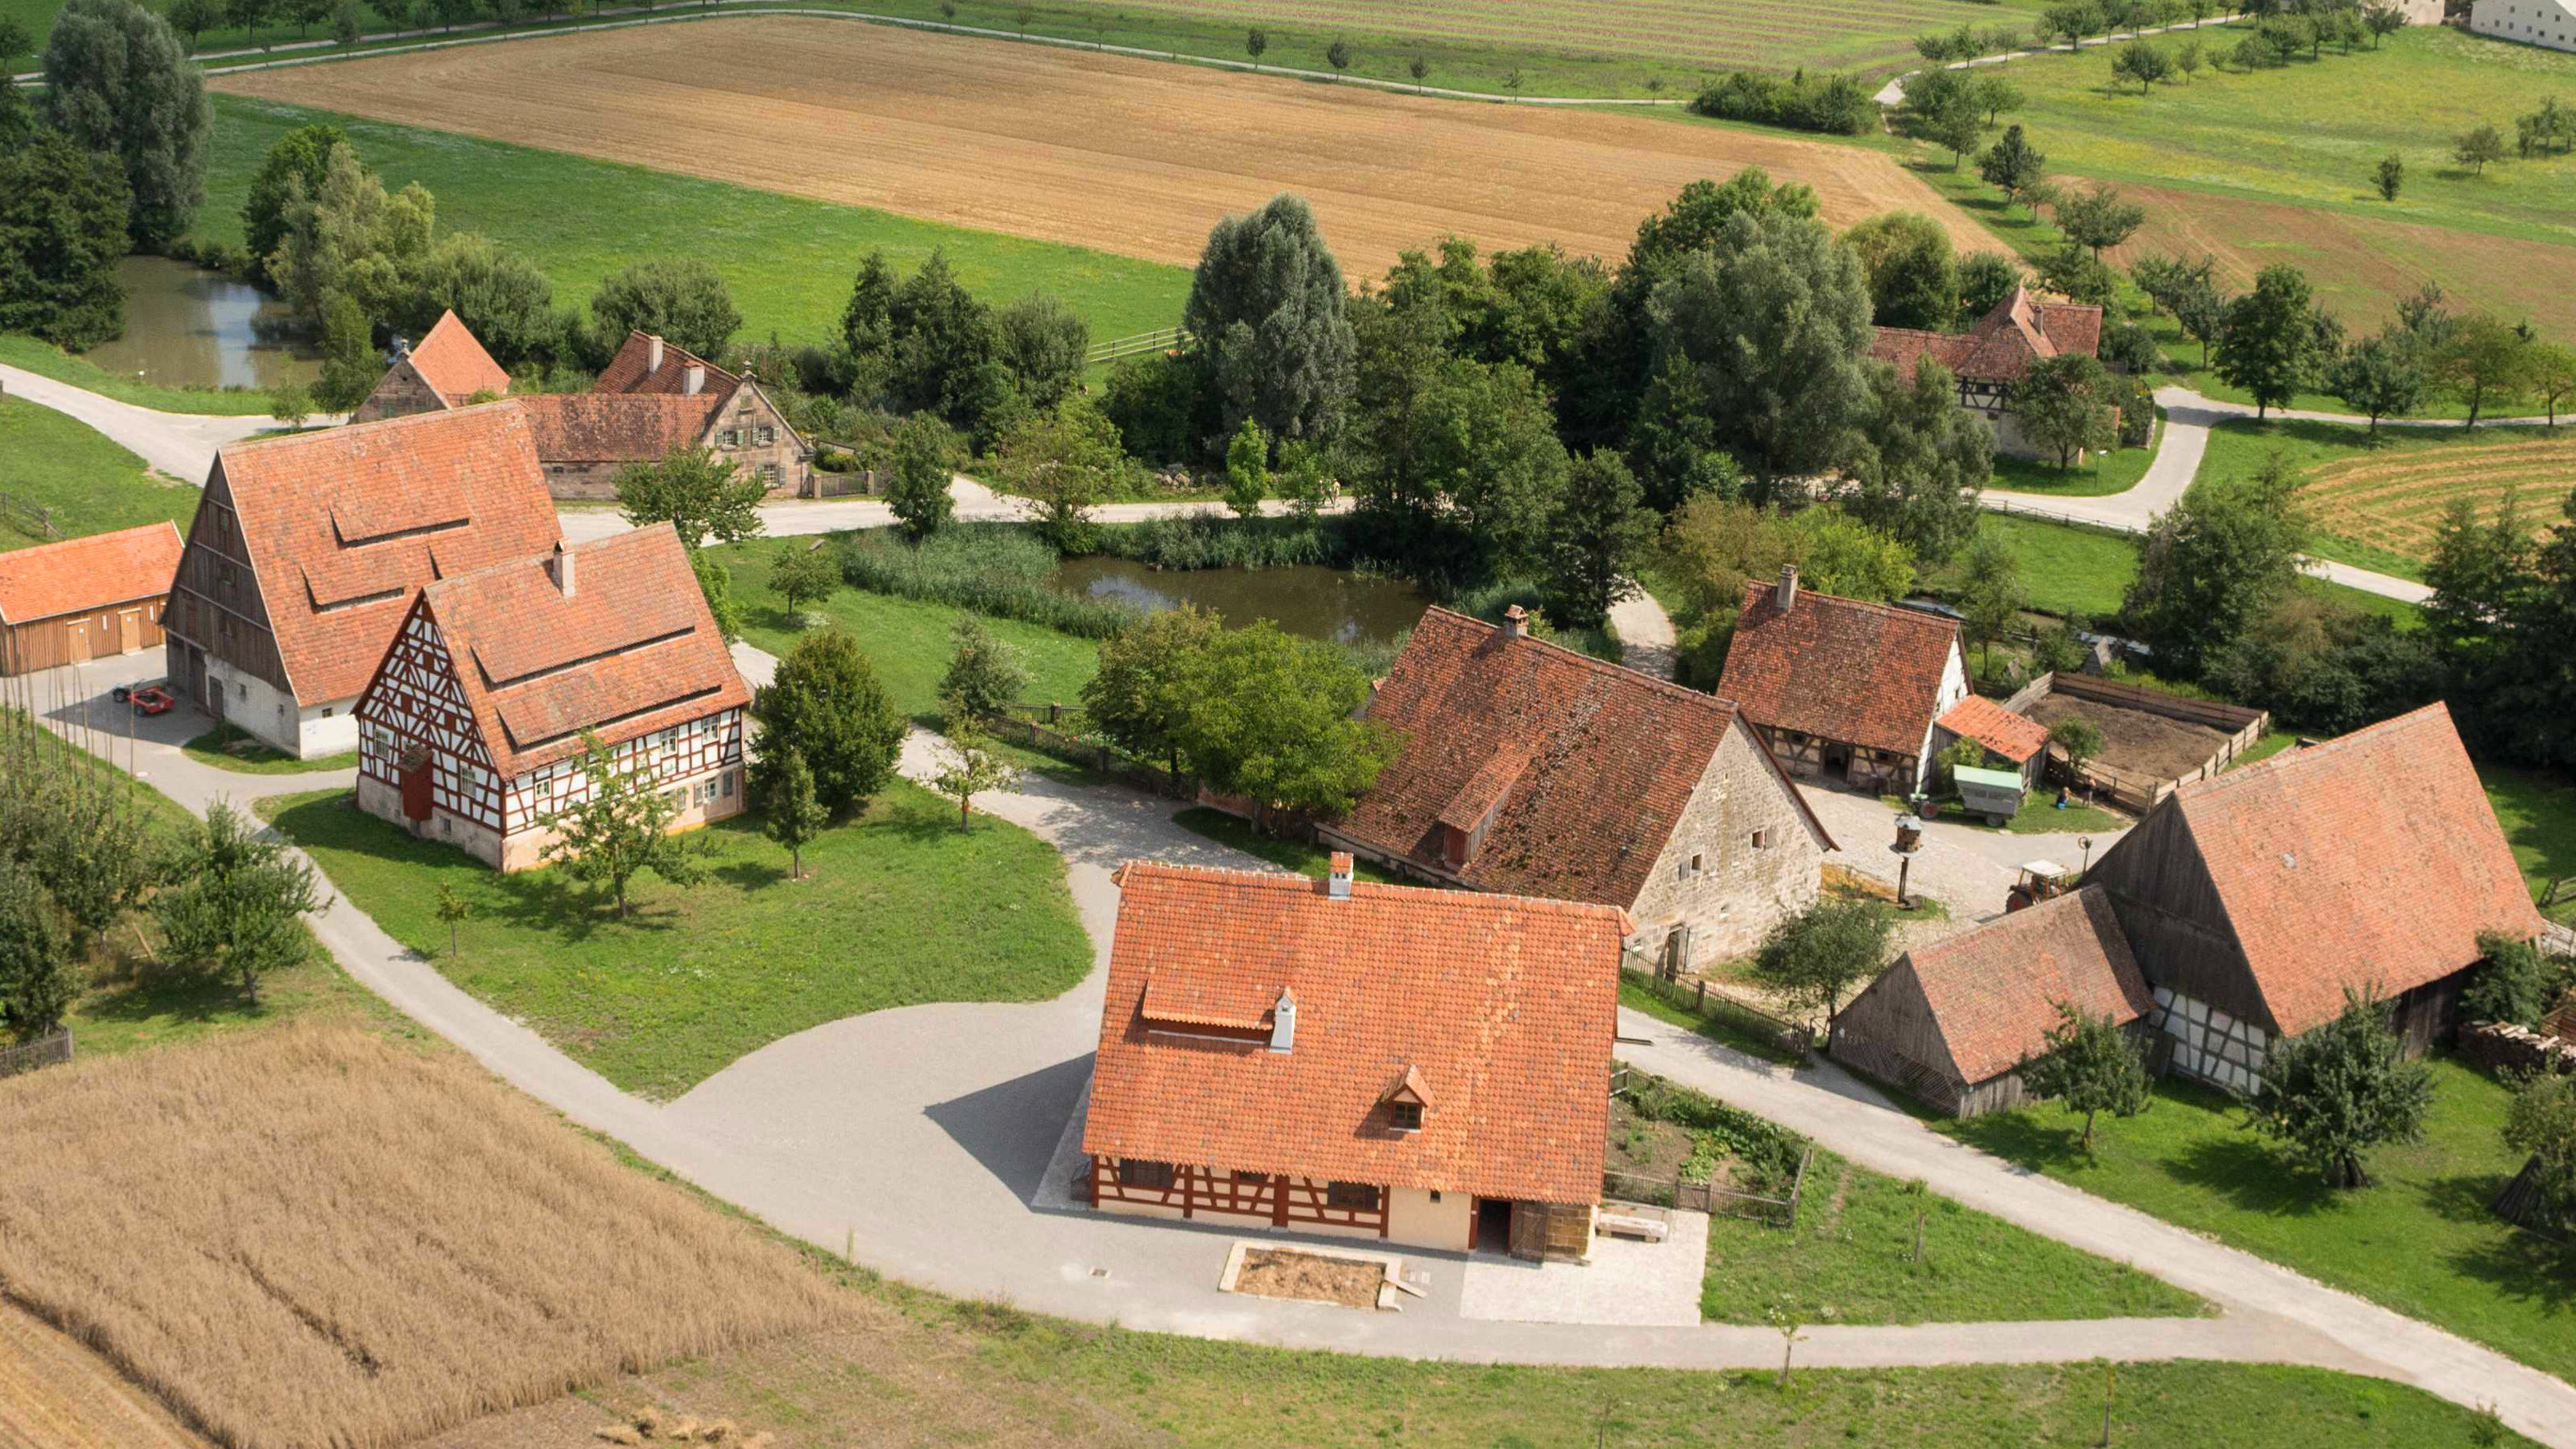 Fotoaufnahme eines Luftbildes der Baugruppe Ost. Die Häuser stehen in kleinen Gruppen und sind umgeben von Feldern, Wiesen und Bäumen. Im Hintergrund ist die weite Landschaft des Museums und der Umgebung erkennbar. 